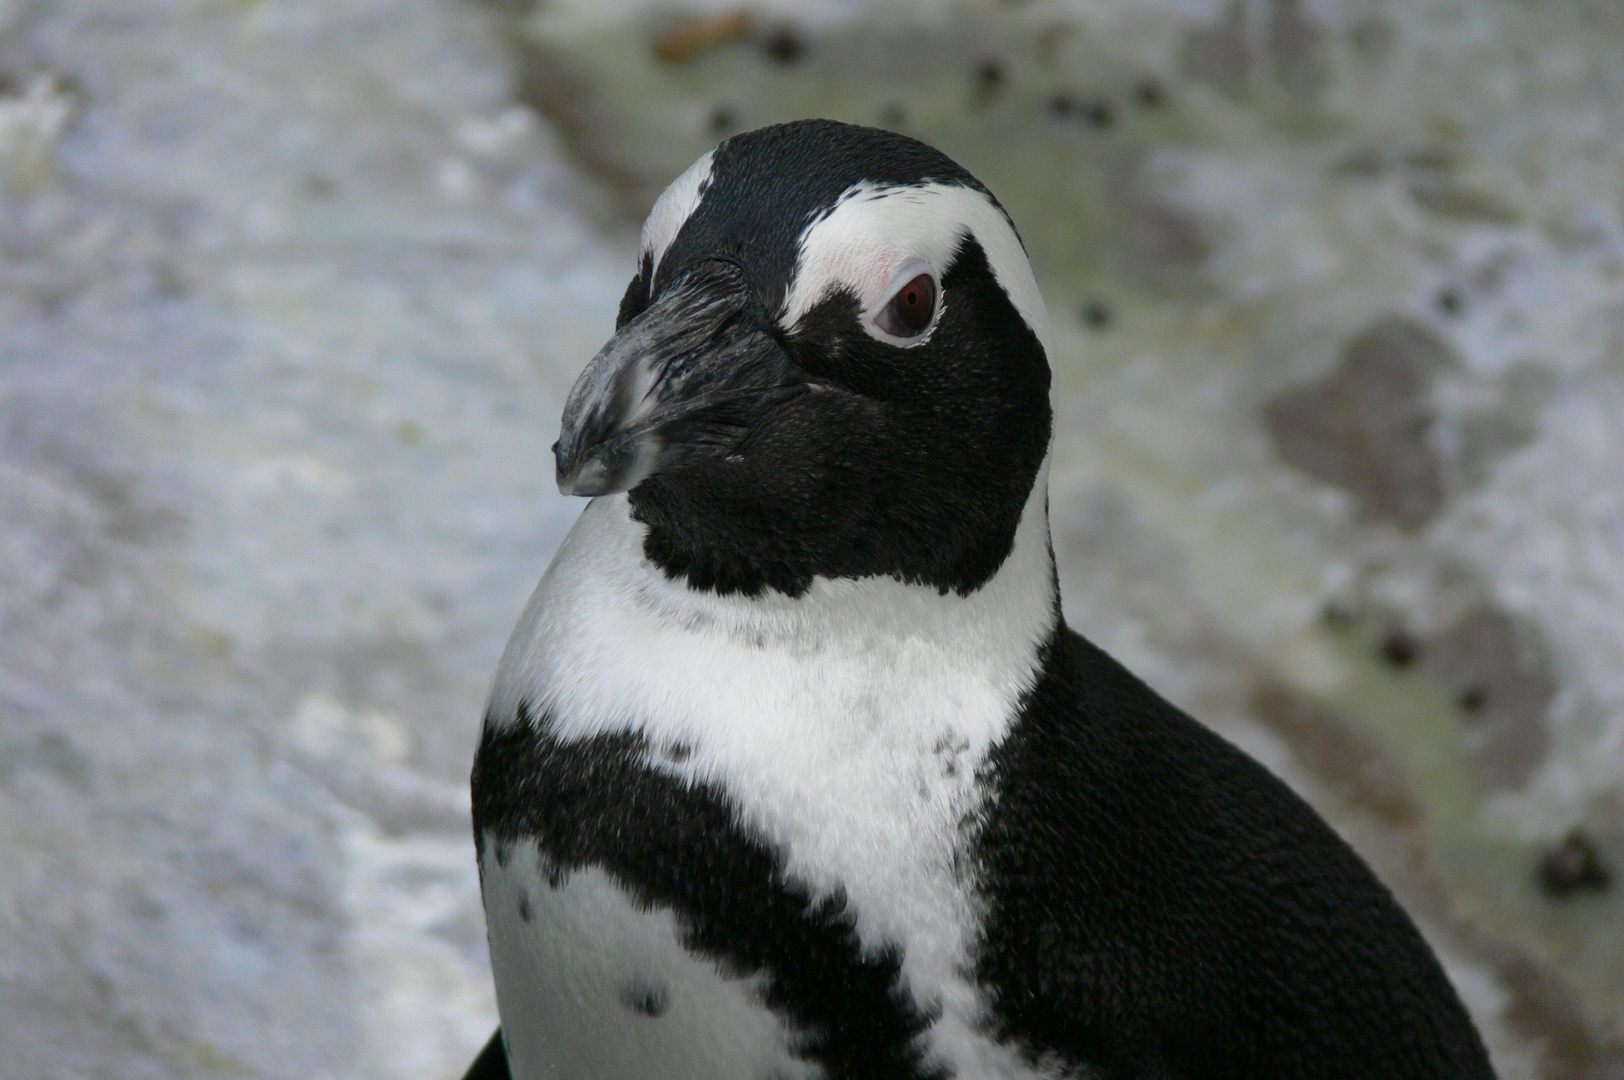 Pinguin im Portrait